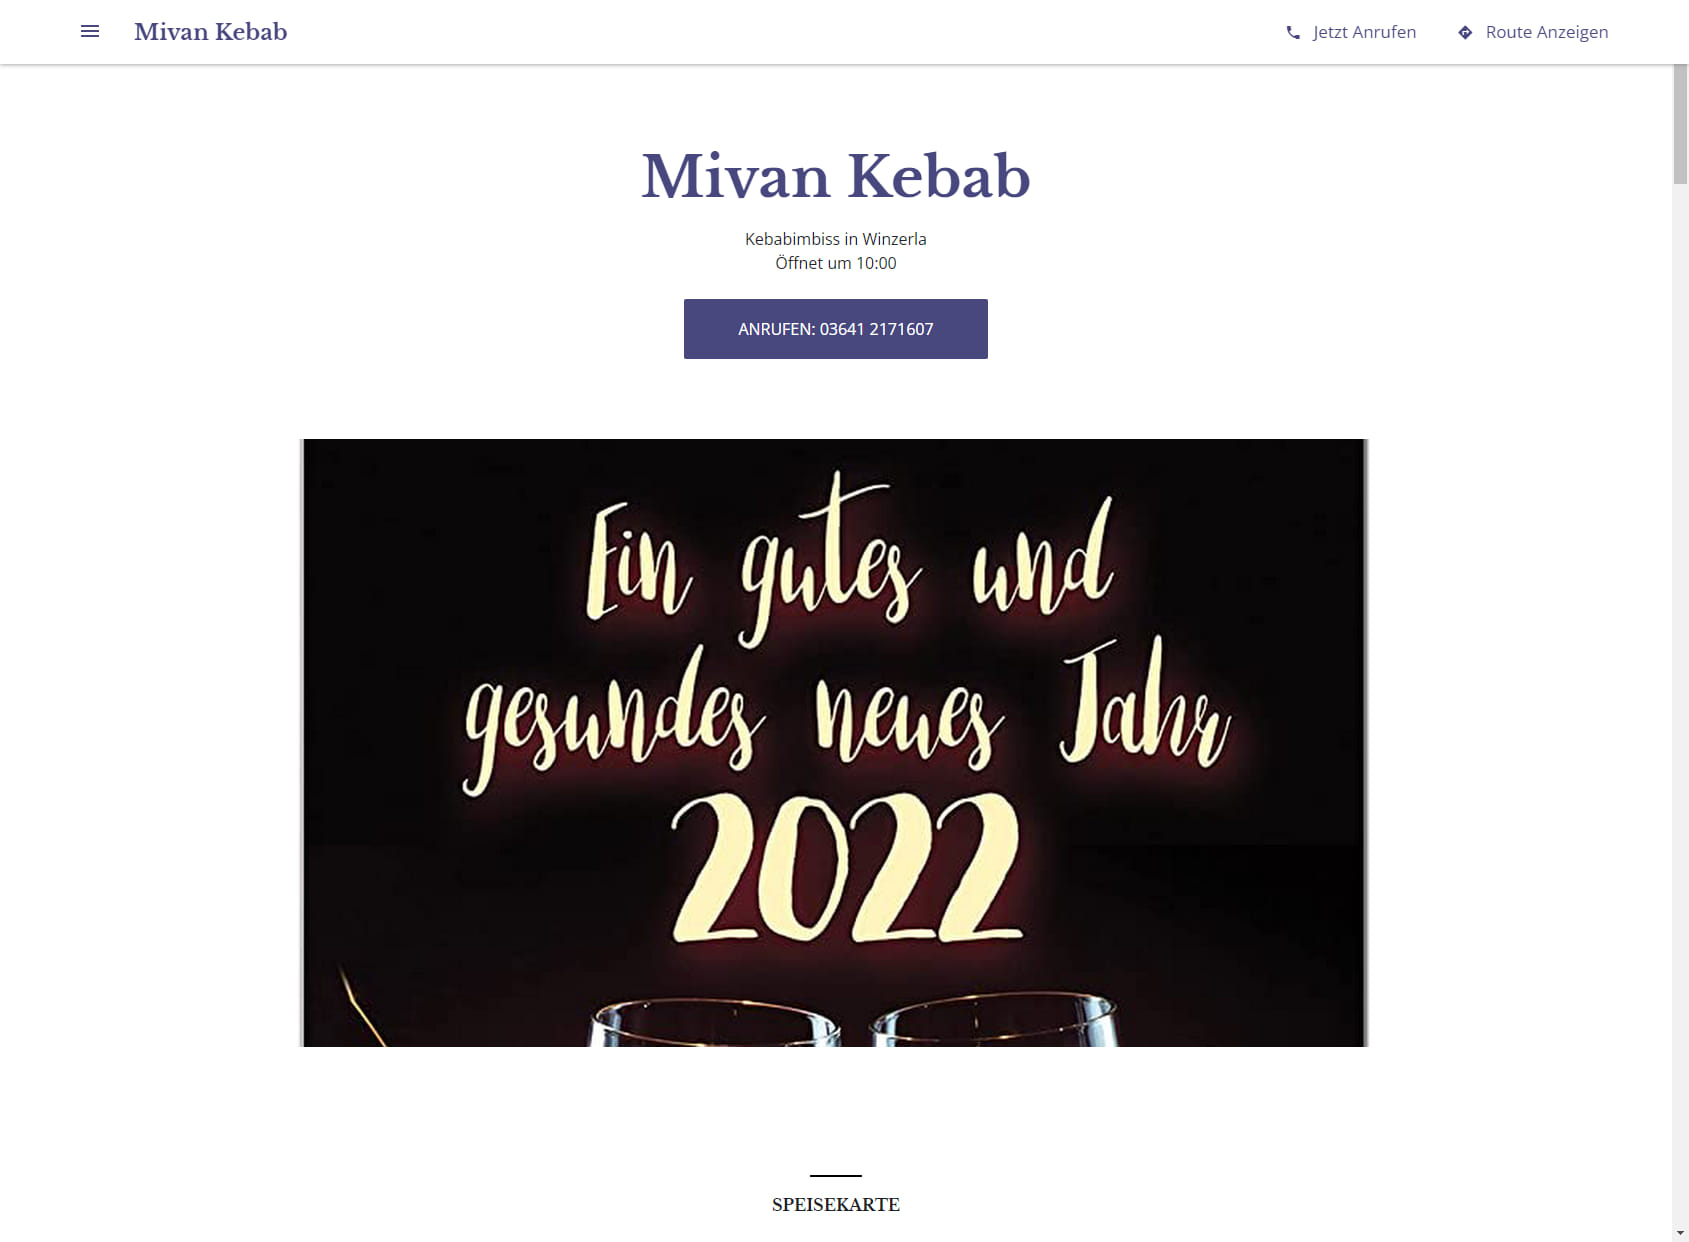 Mivan Kebab